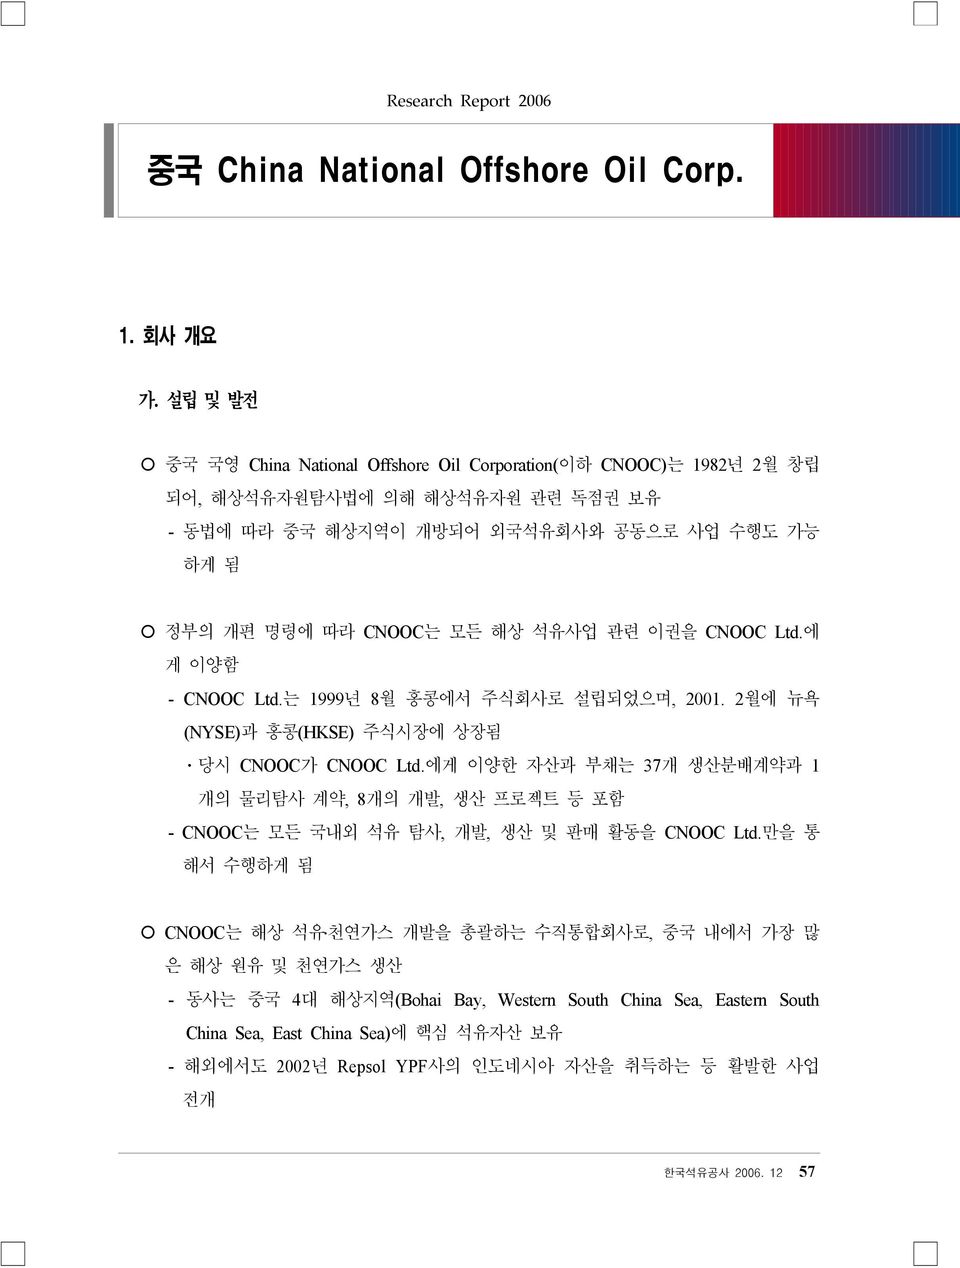 석유사업 관련 이권을 CNOOC Ltd.에 게 이양함 - CNOOC Ltd.는 1999년 8월 홍콩에서 주식회사로 설립되었으며, 2001. 2월에 뉴욕 (NYSE)과 홍콩(HKSE) 주식시장에 상장됨 ㆍ당시 CNOOC가 CNOOC Ltd.